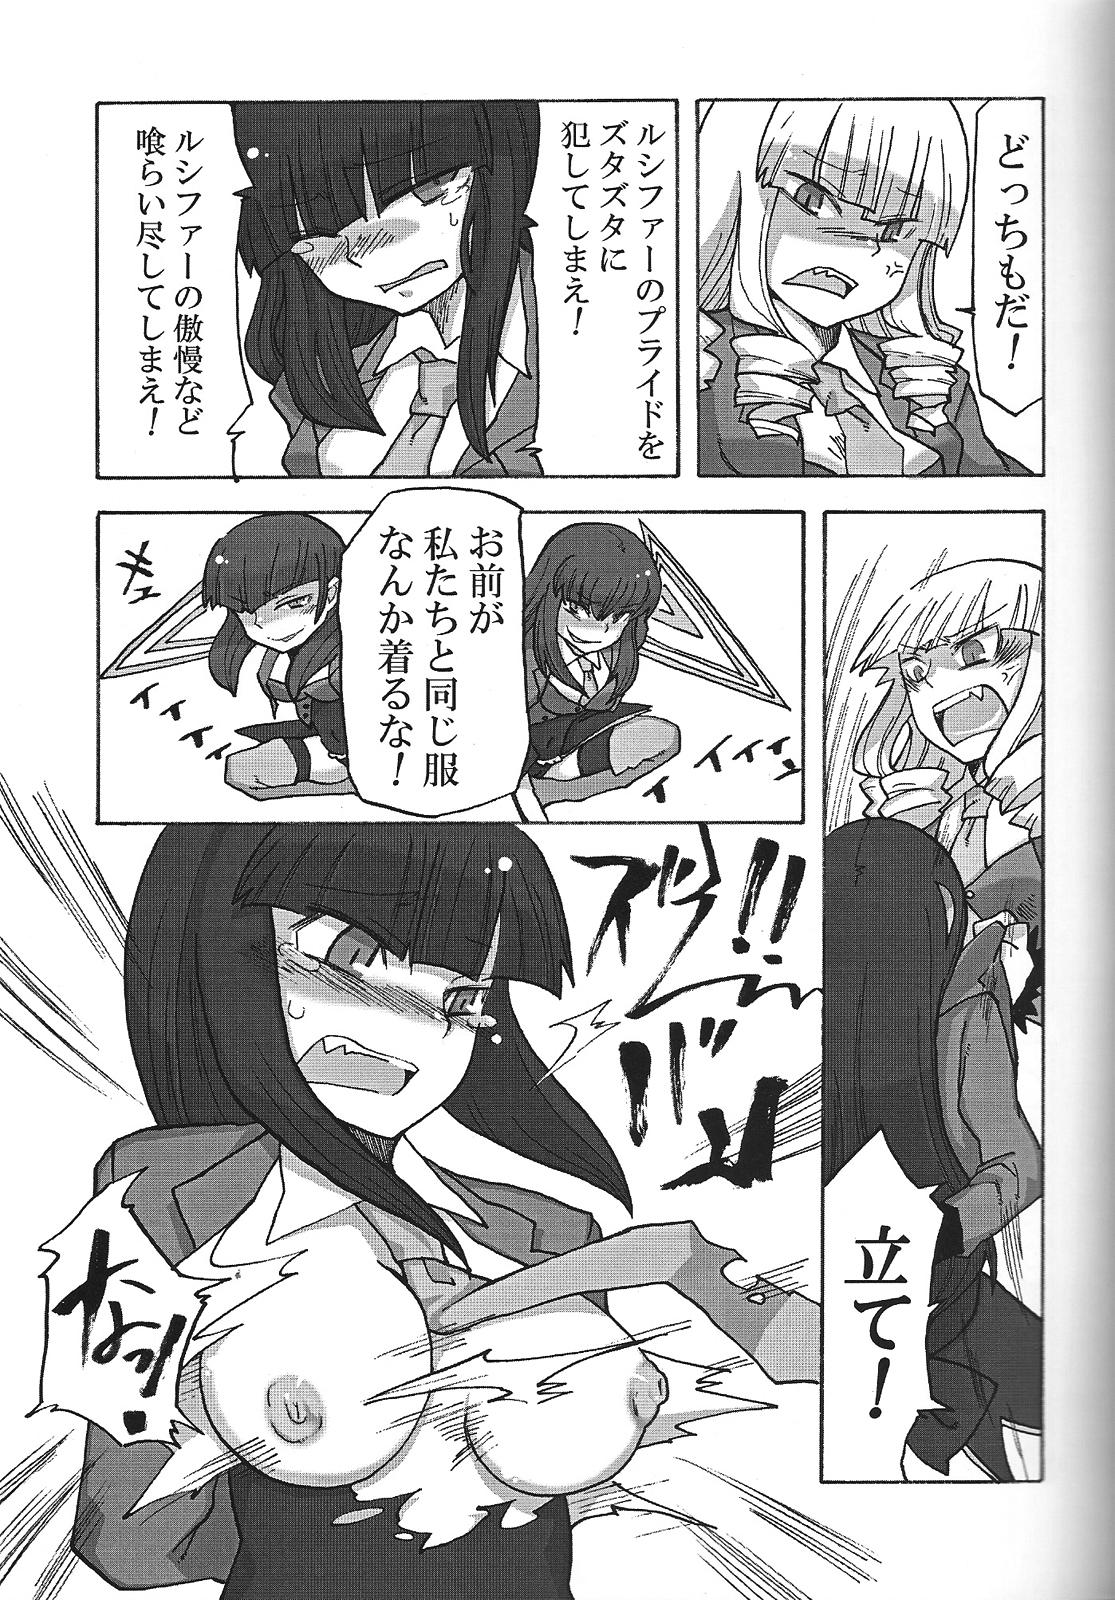 Branquinha Nakayoshi 7 Shimai - Umineko no naku koro ni Ass Lick - Page 8